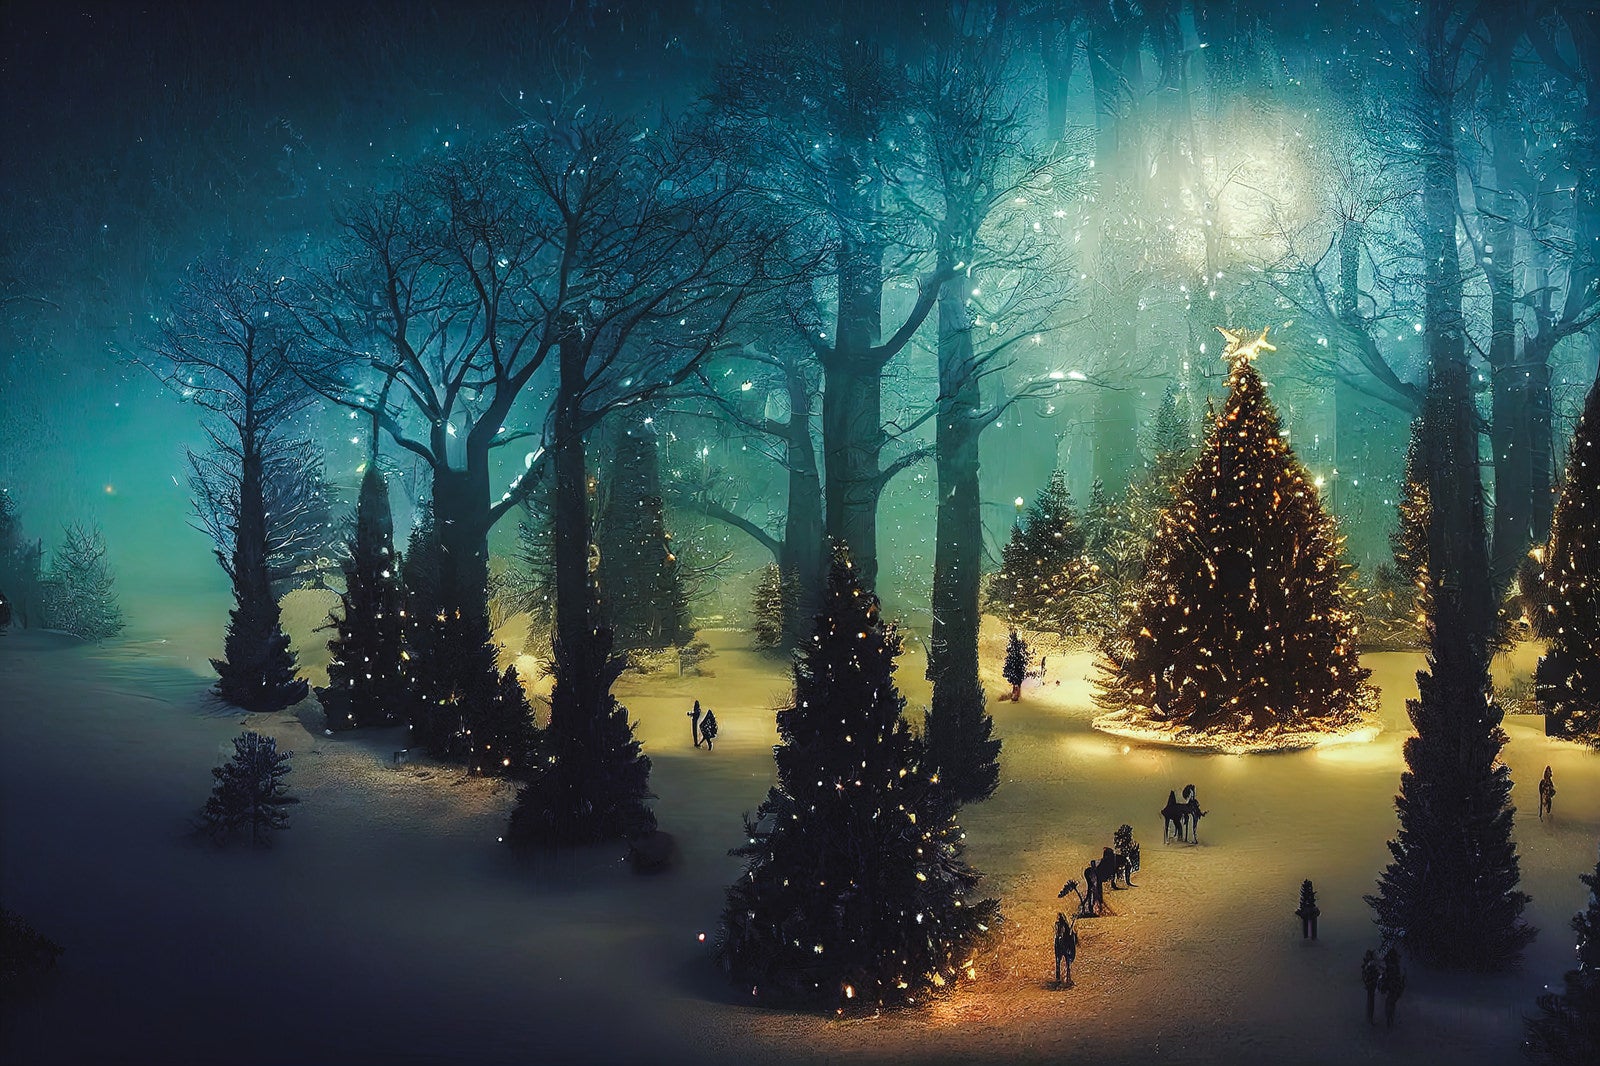 ライトアップされたクリスマスツリーの森の無料AI画像素材 - ID.83218 ...